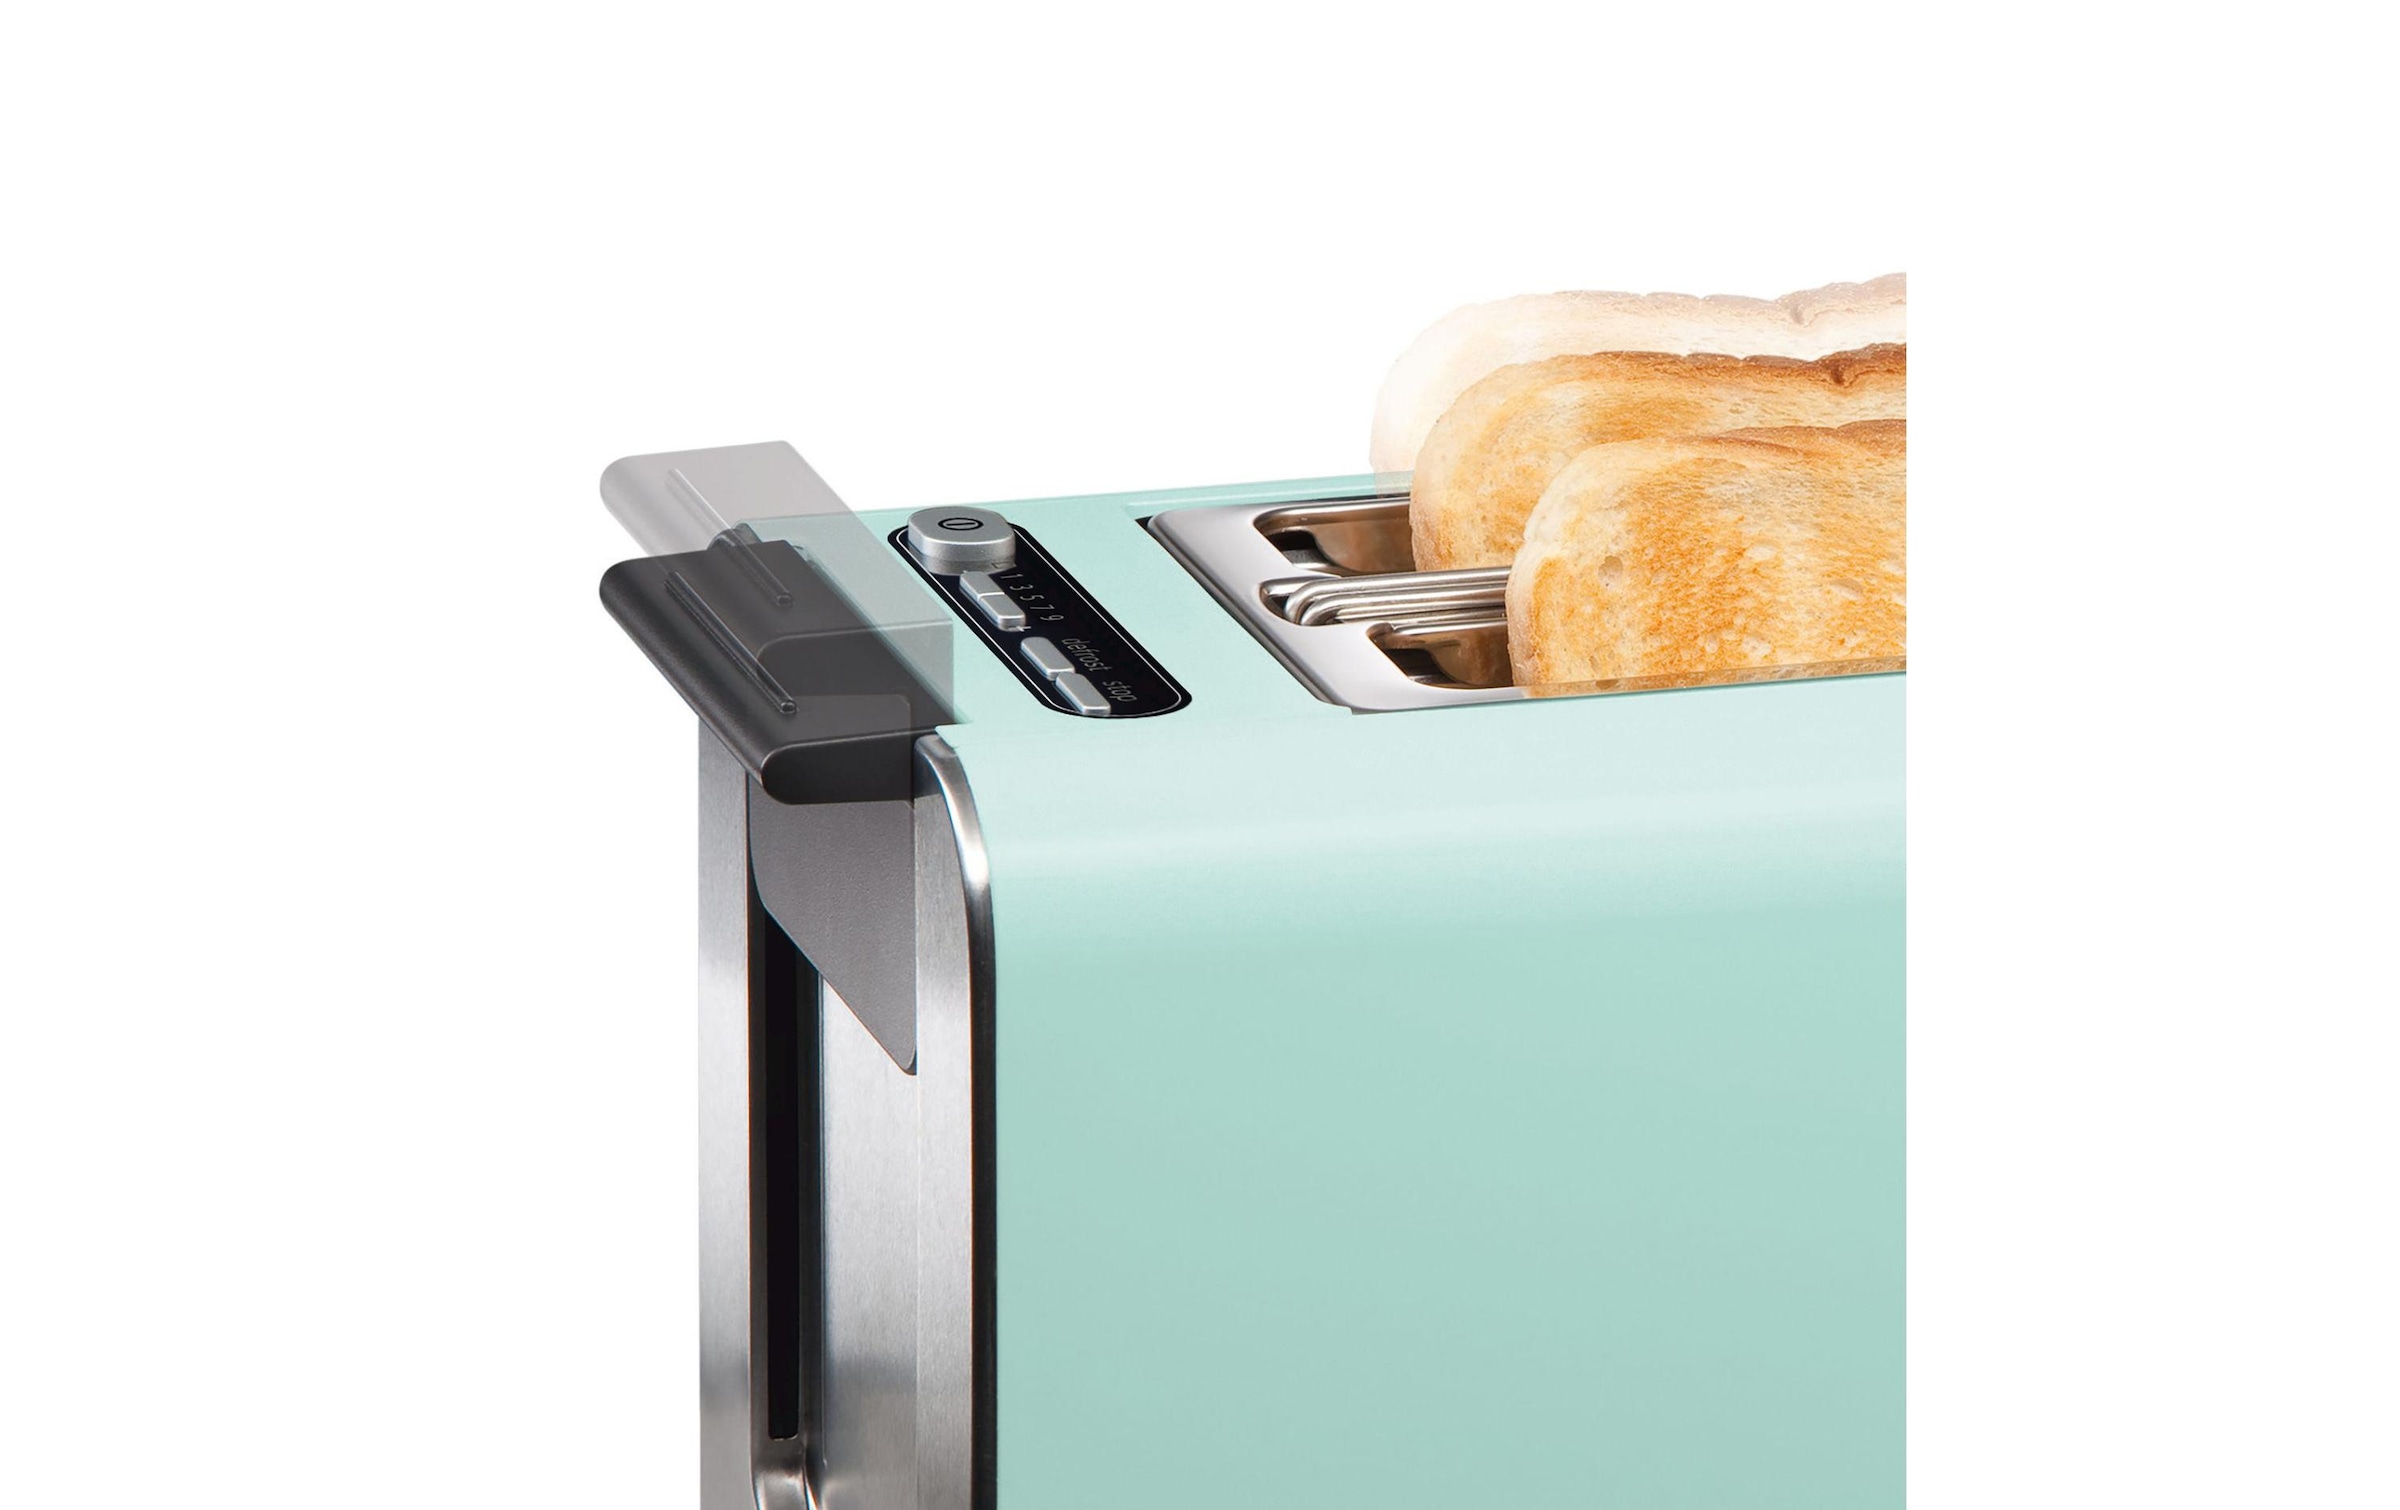 BOSCH Toaster »TAT8612 Mint«, 860 W